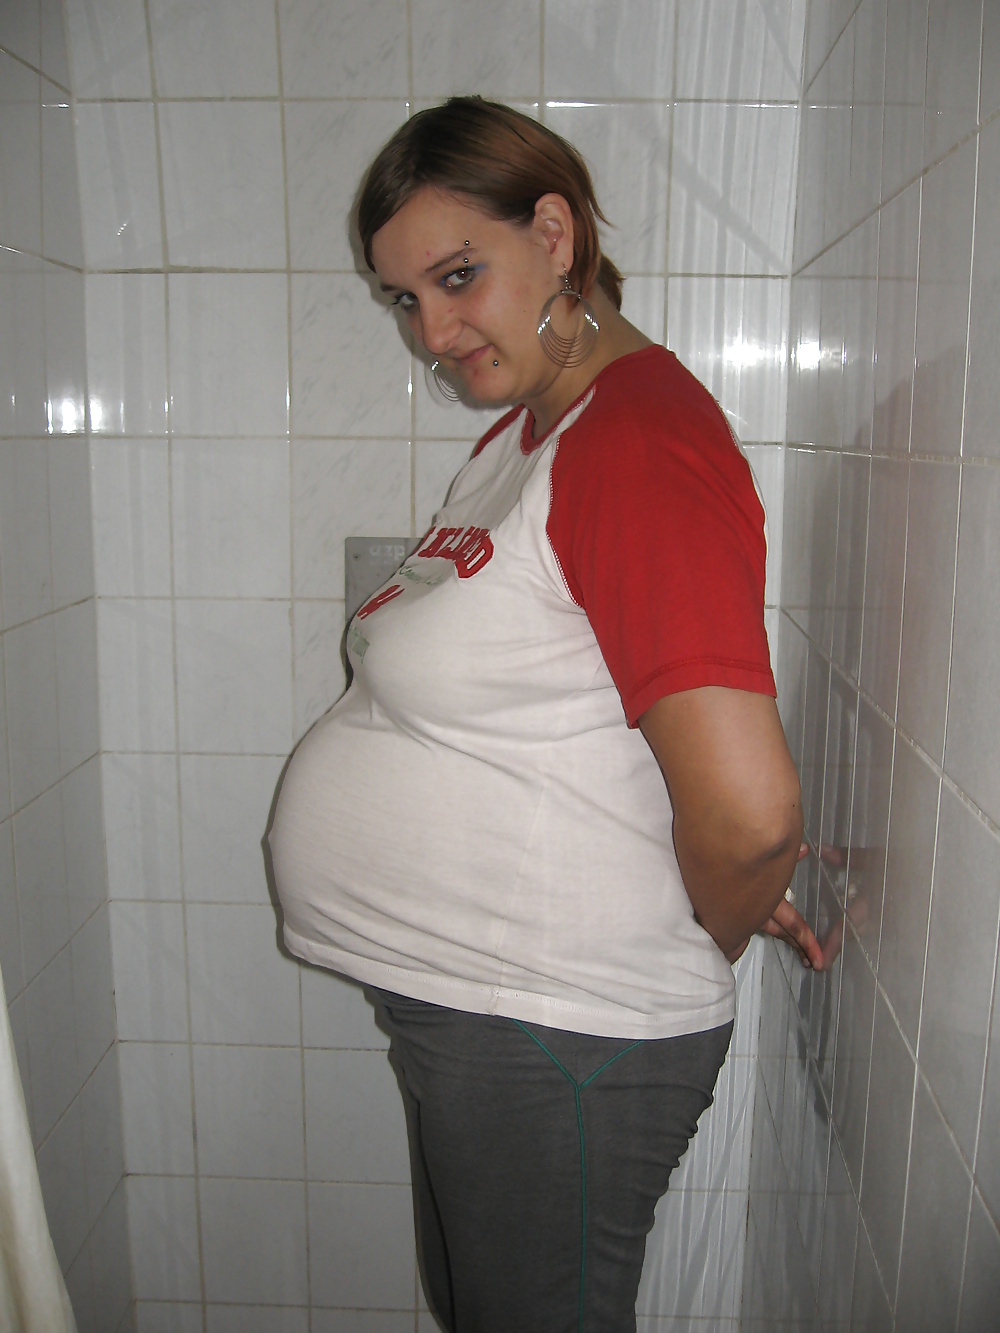 Pregnant Fat Slut - FAT PREGNANT ROMANIAN SLUT Porn Pictures, XXX Photos, Sex Images #1568199 -  PICTOA